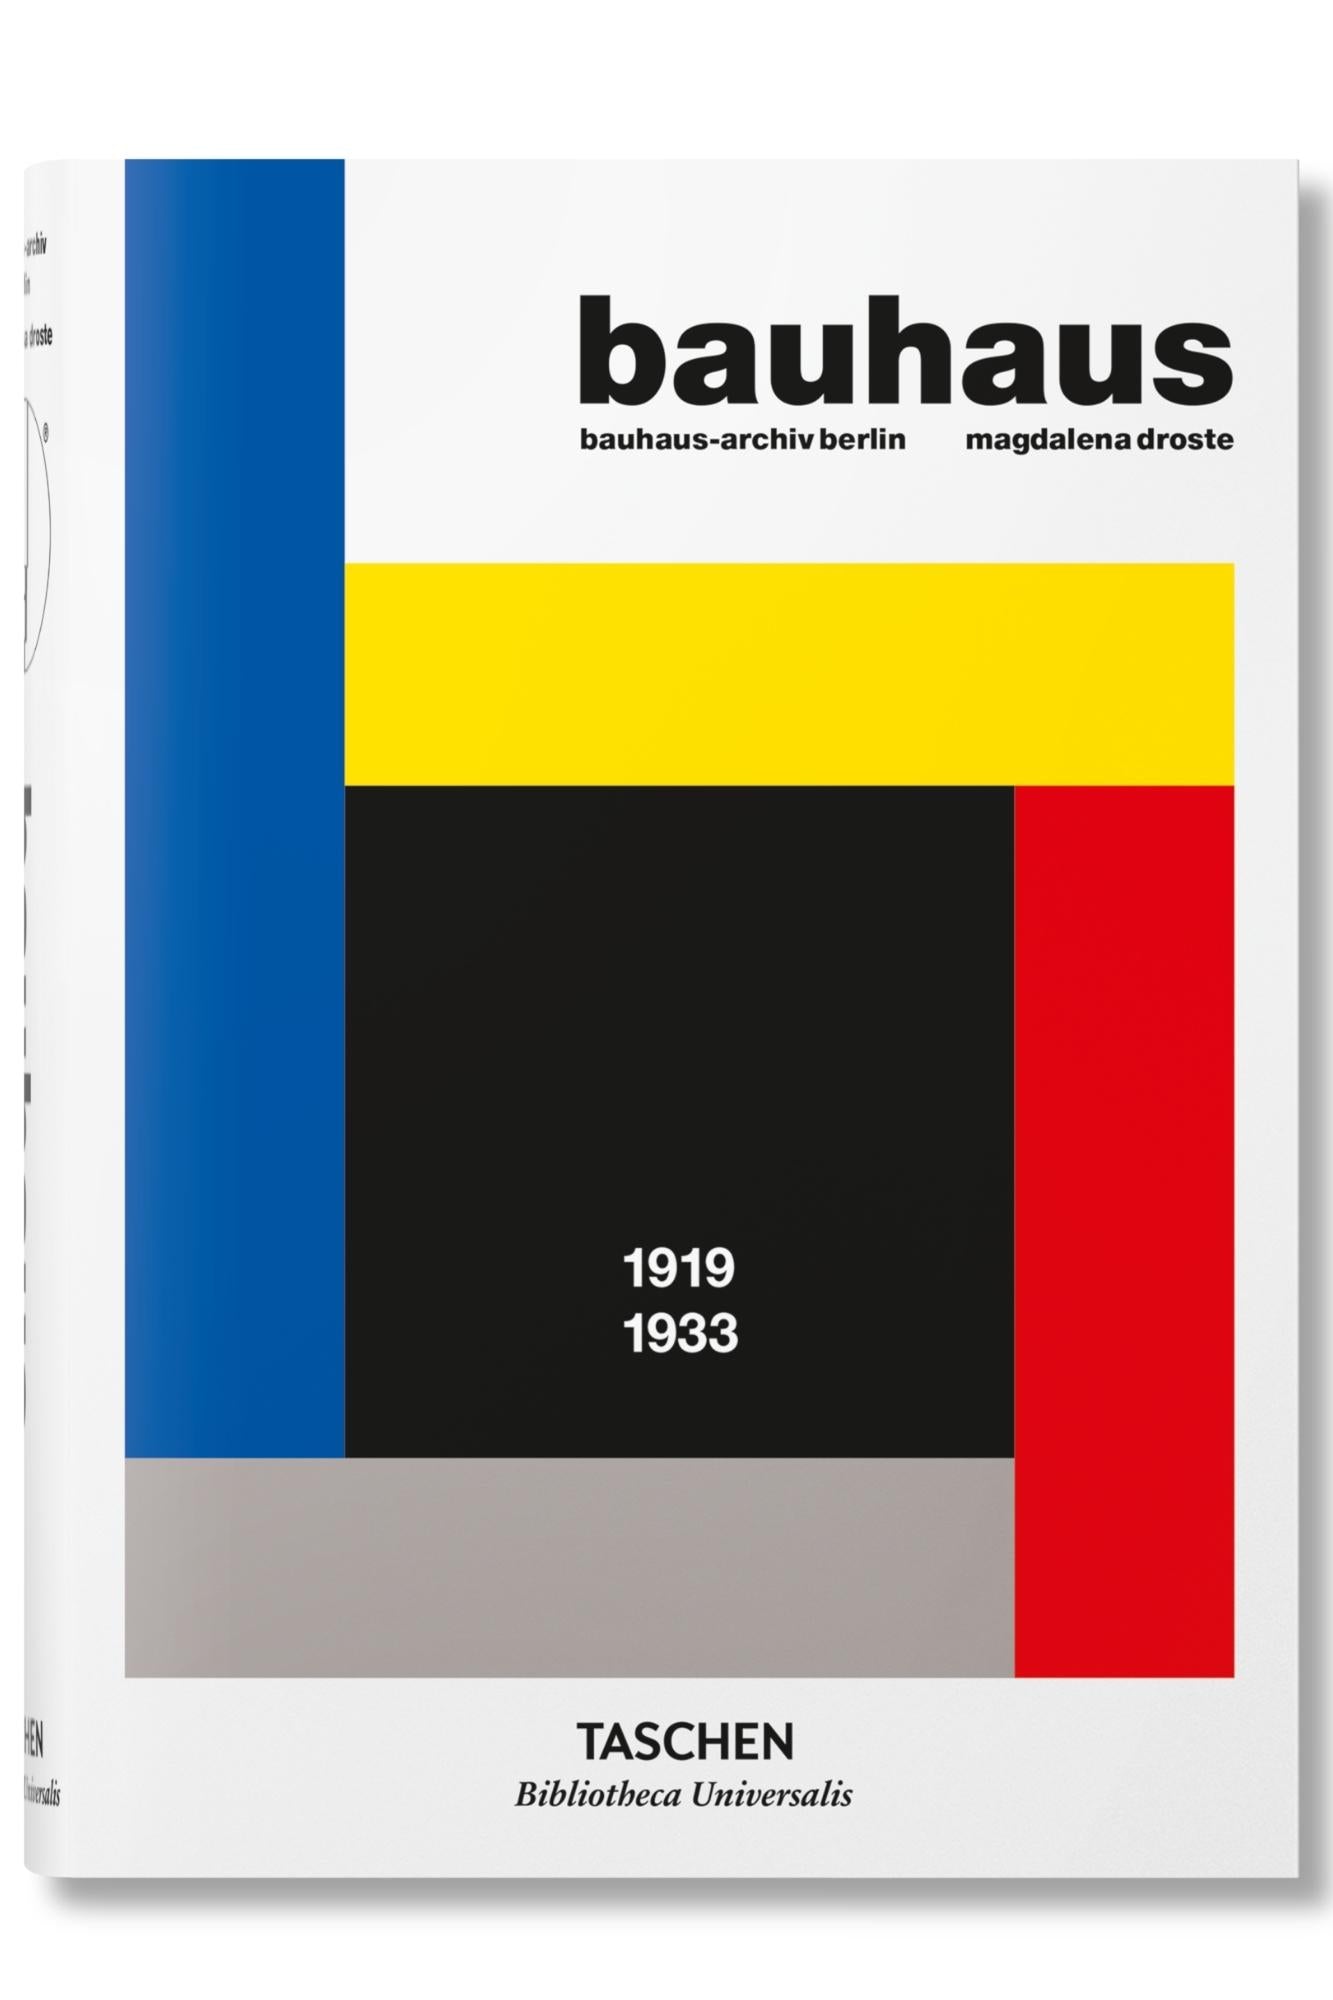     bauhaus-1_67ec677b-09cc-4f7d-a625-1c29d3b29b9f